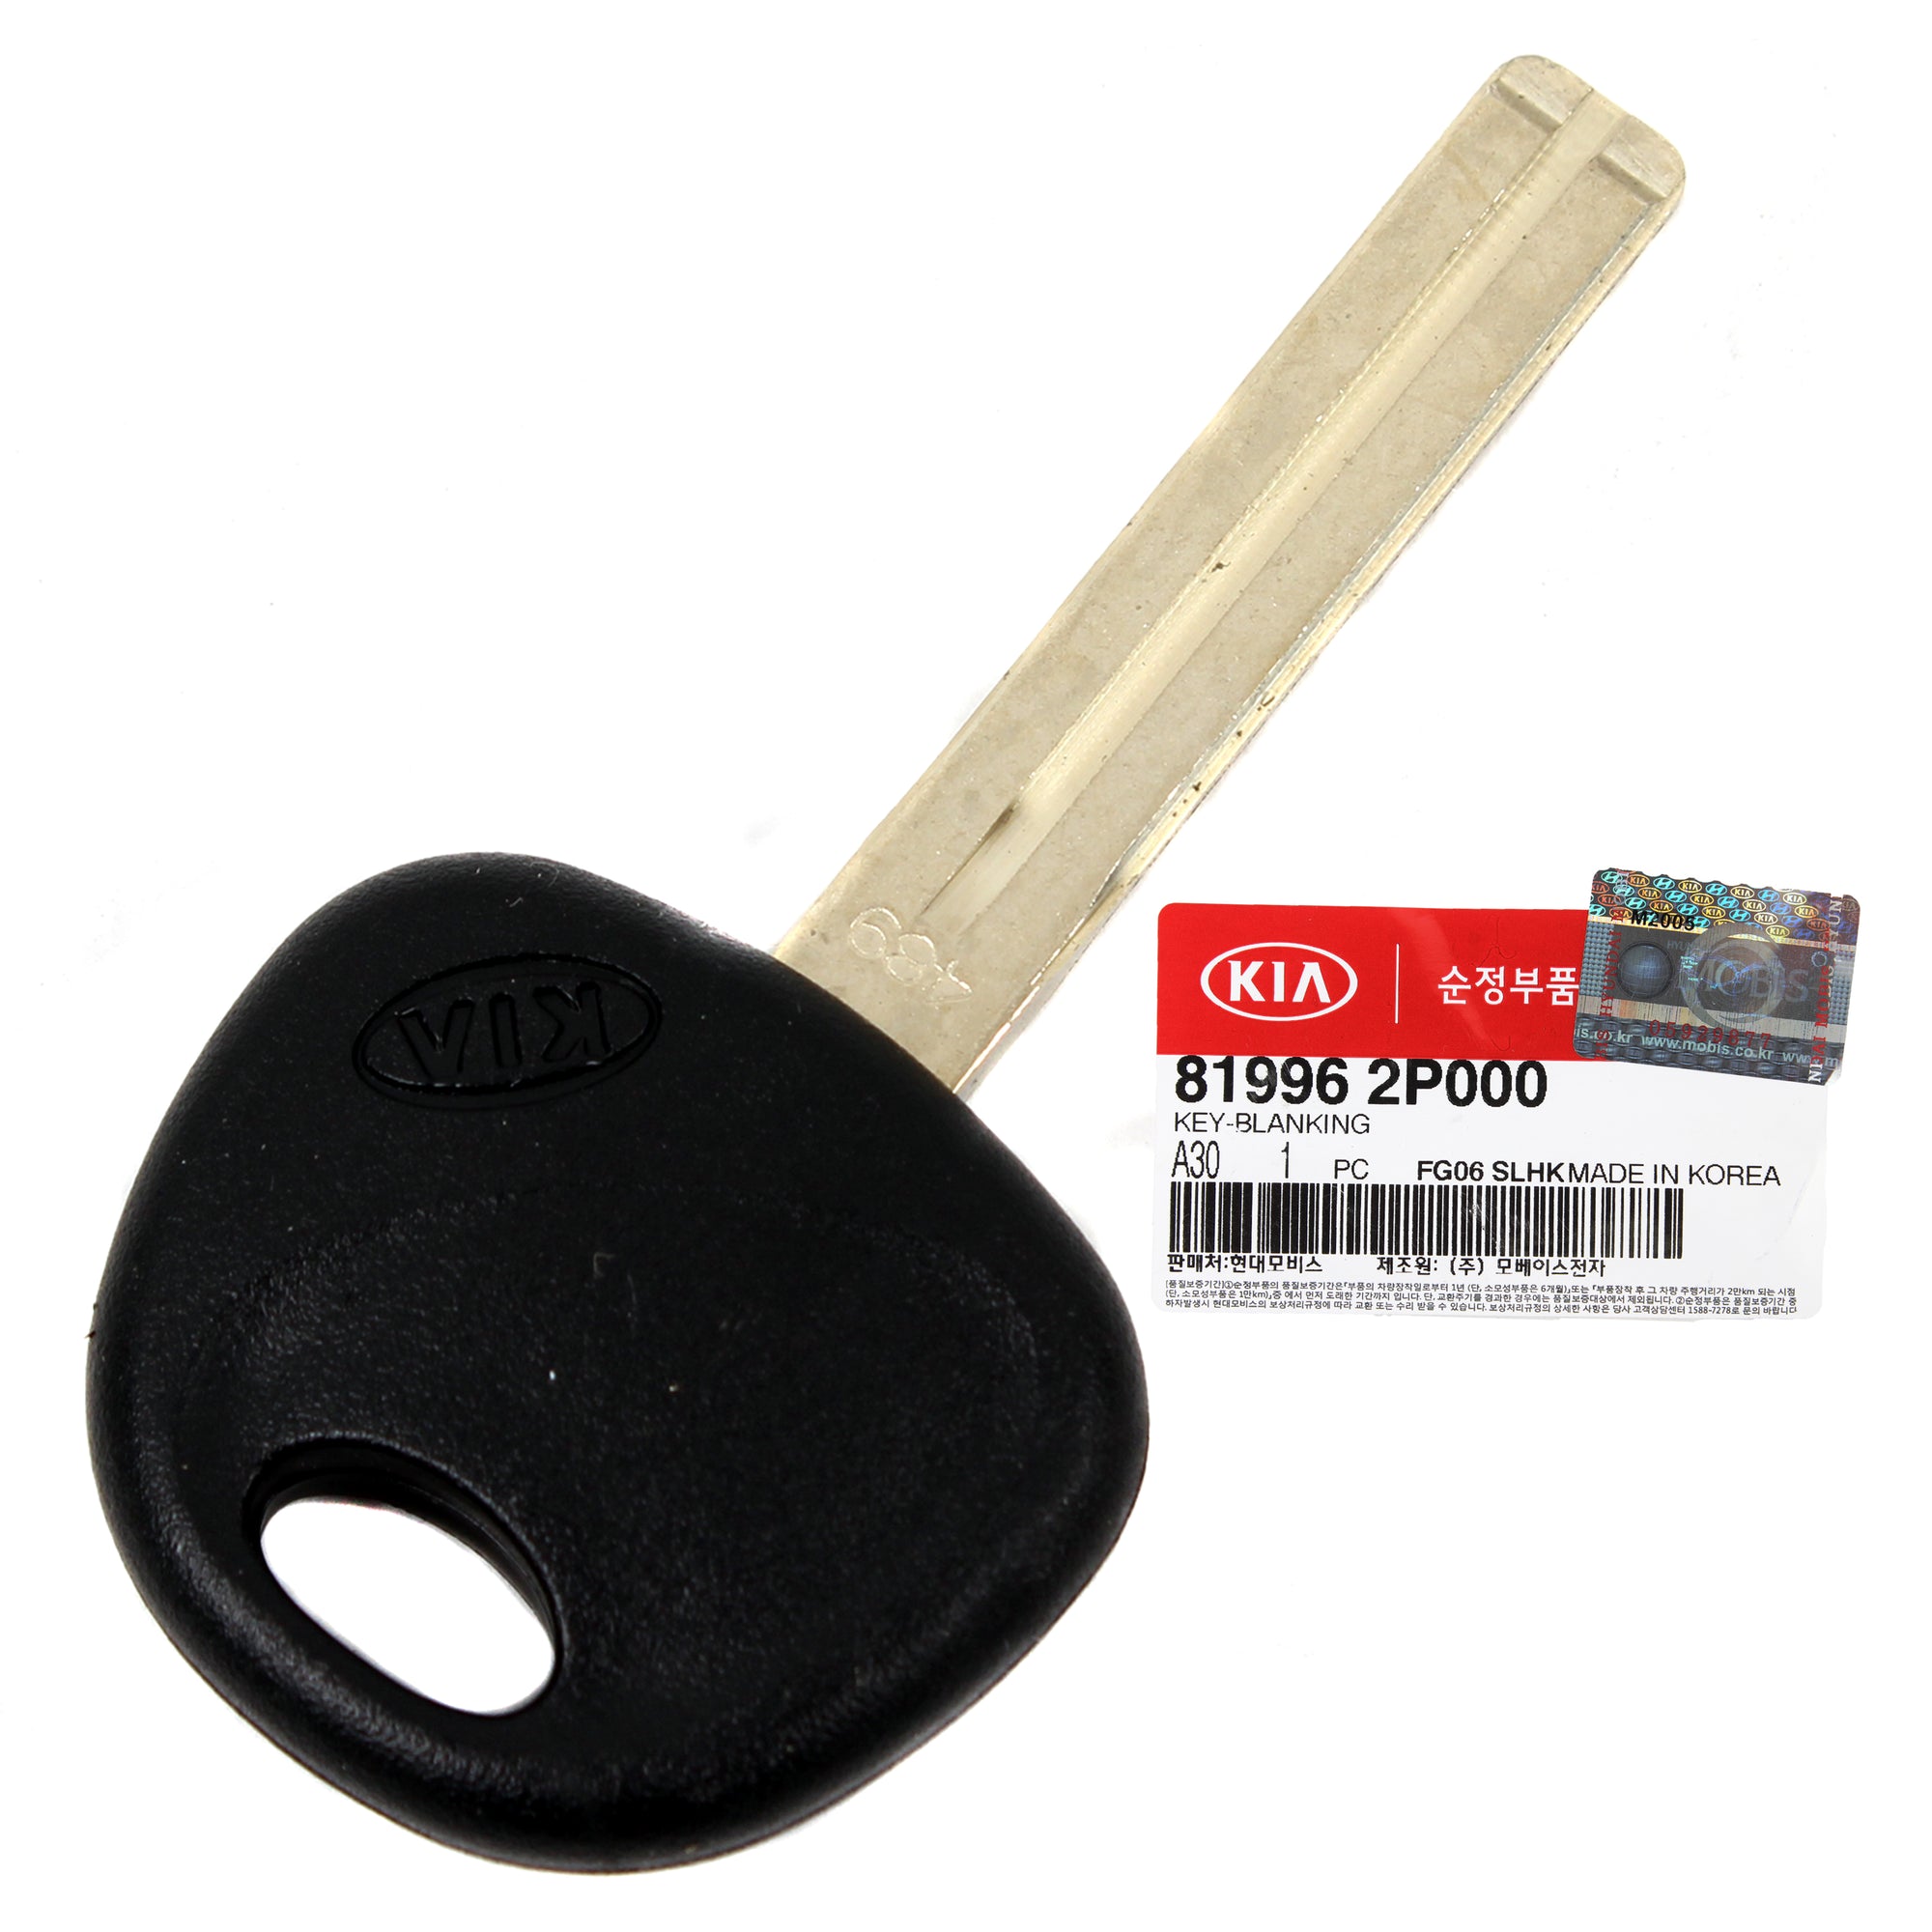 GENUINE Blanking Uncut Key for 2009-2013 Kia Sorento 819962P000